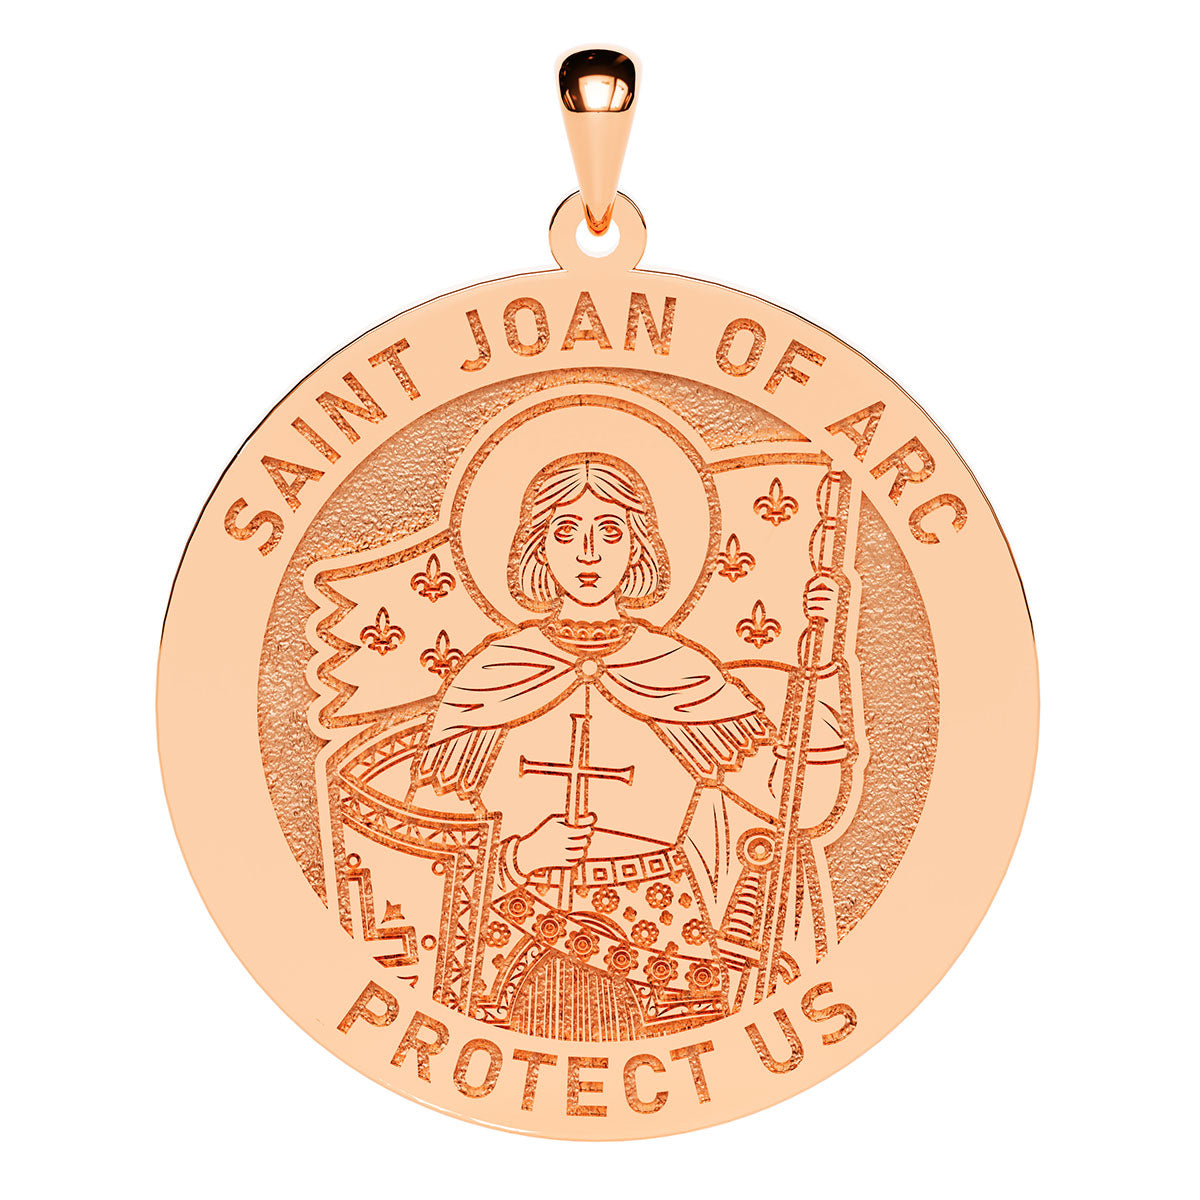 Saint Joan of Arc Icon Round Religious Medal